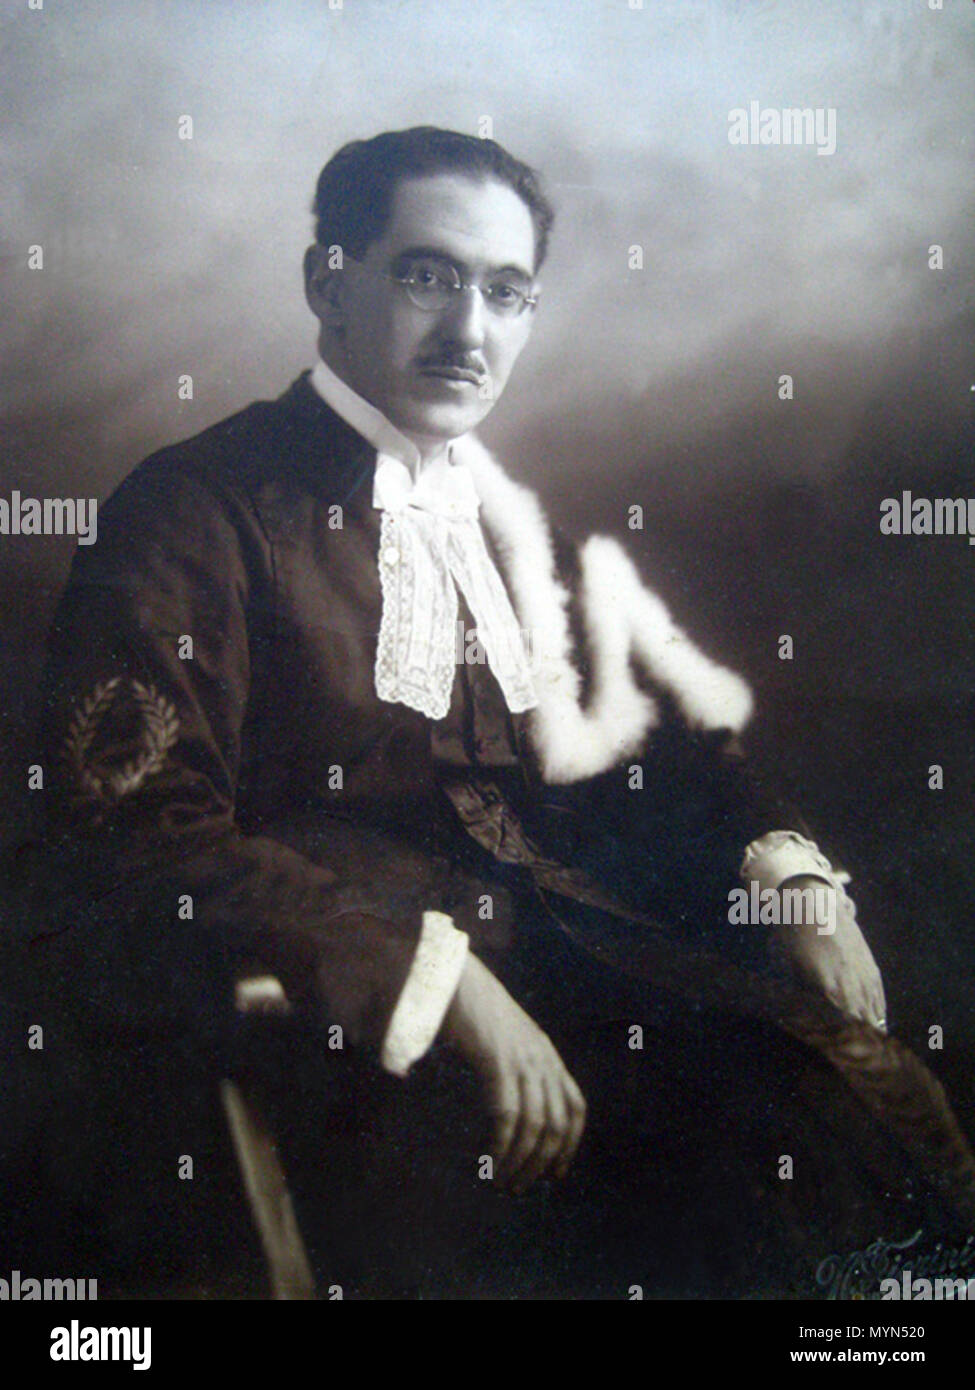 . Português : Oscar Freire de Carvalho (Salvador, 3 de Outubro de 1882 - São Paulo, 11 de Setembro de 1923) foi um médico brasileiro. vers 1910. Oscar Freire 001 Inconnu 400 Banque D'Images